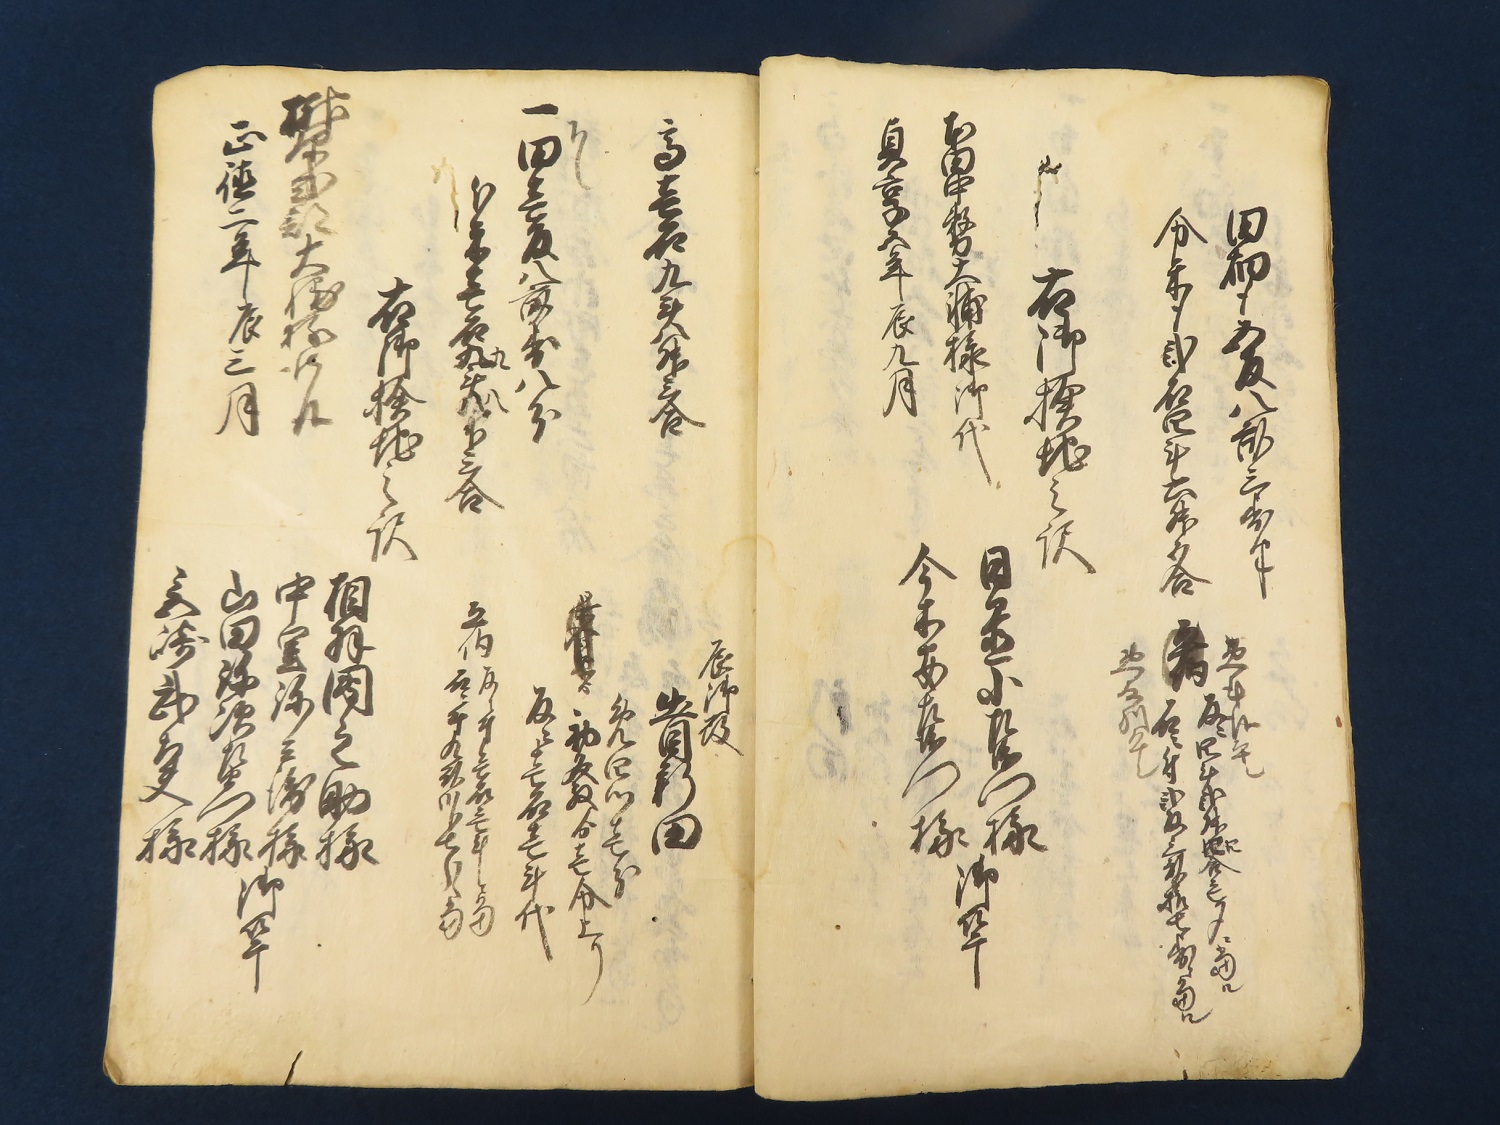 神戸 古本買取 古書出張買取 播磨国印南郡 和本 古文書